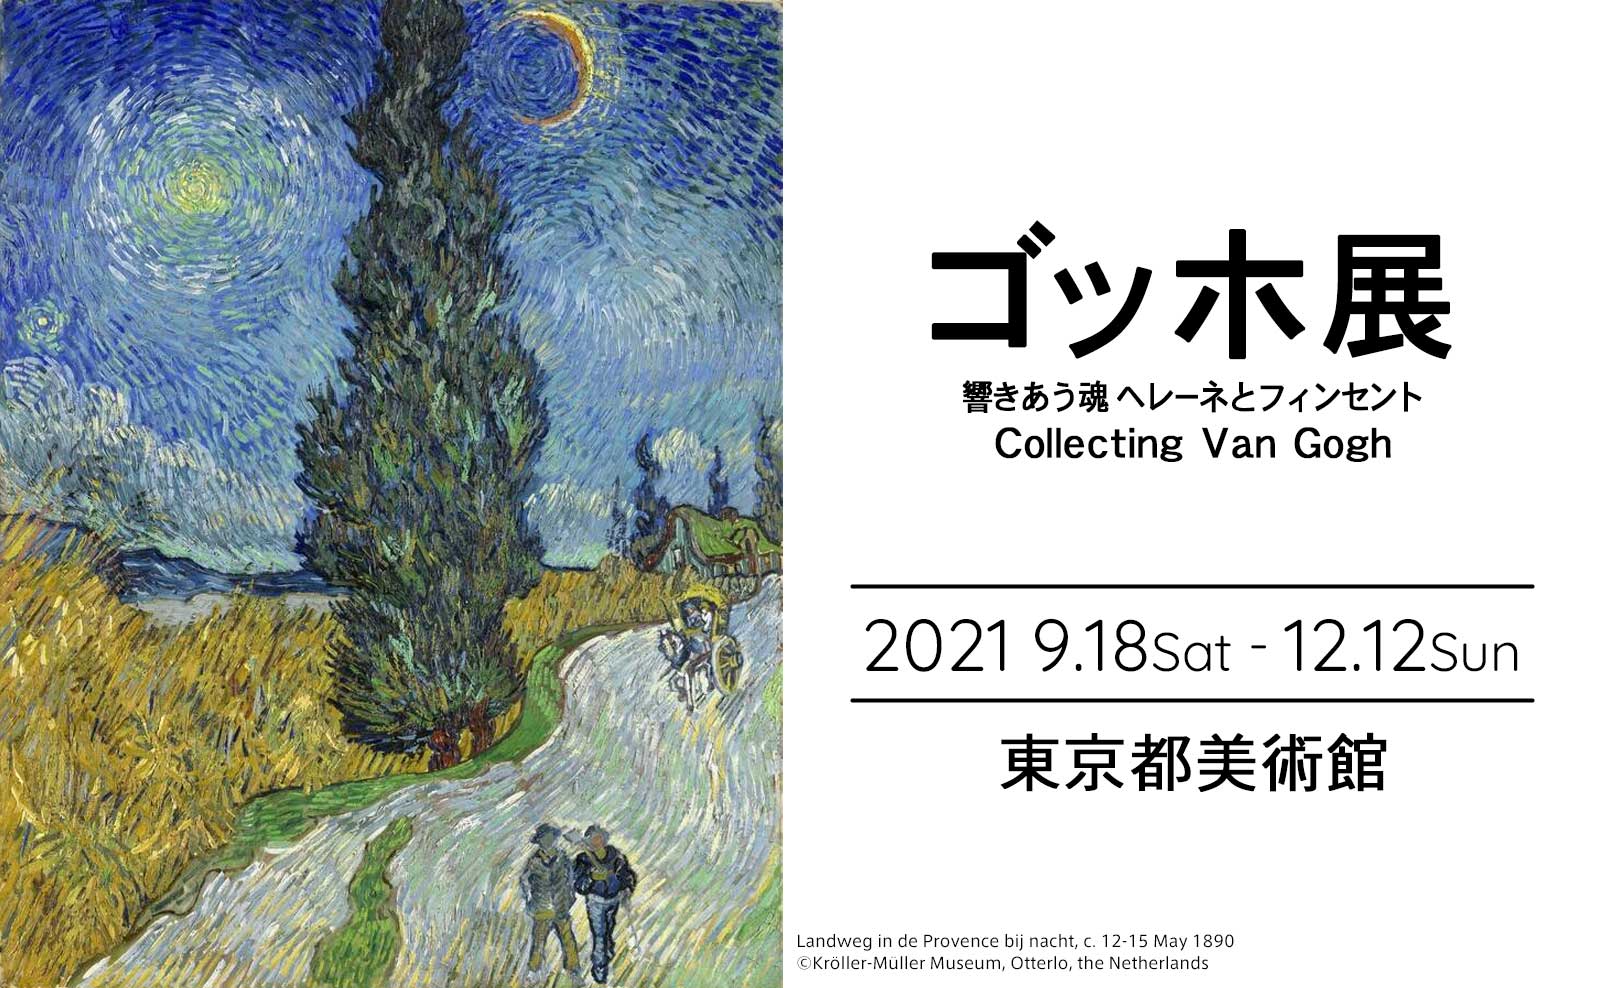 東京都美術館で開催される「ゴッホ展――響きあう魂 ヘレーネとフィンセント」のアイキャッチ